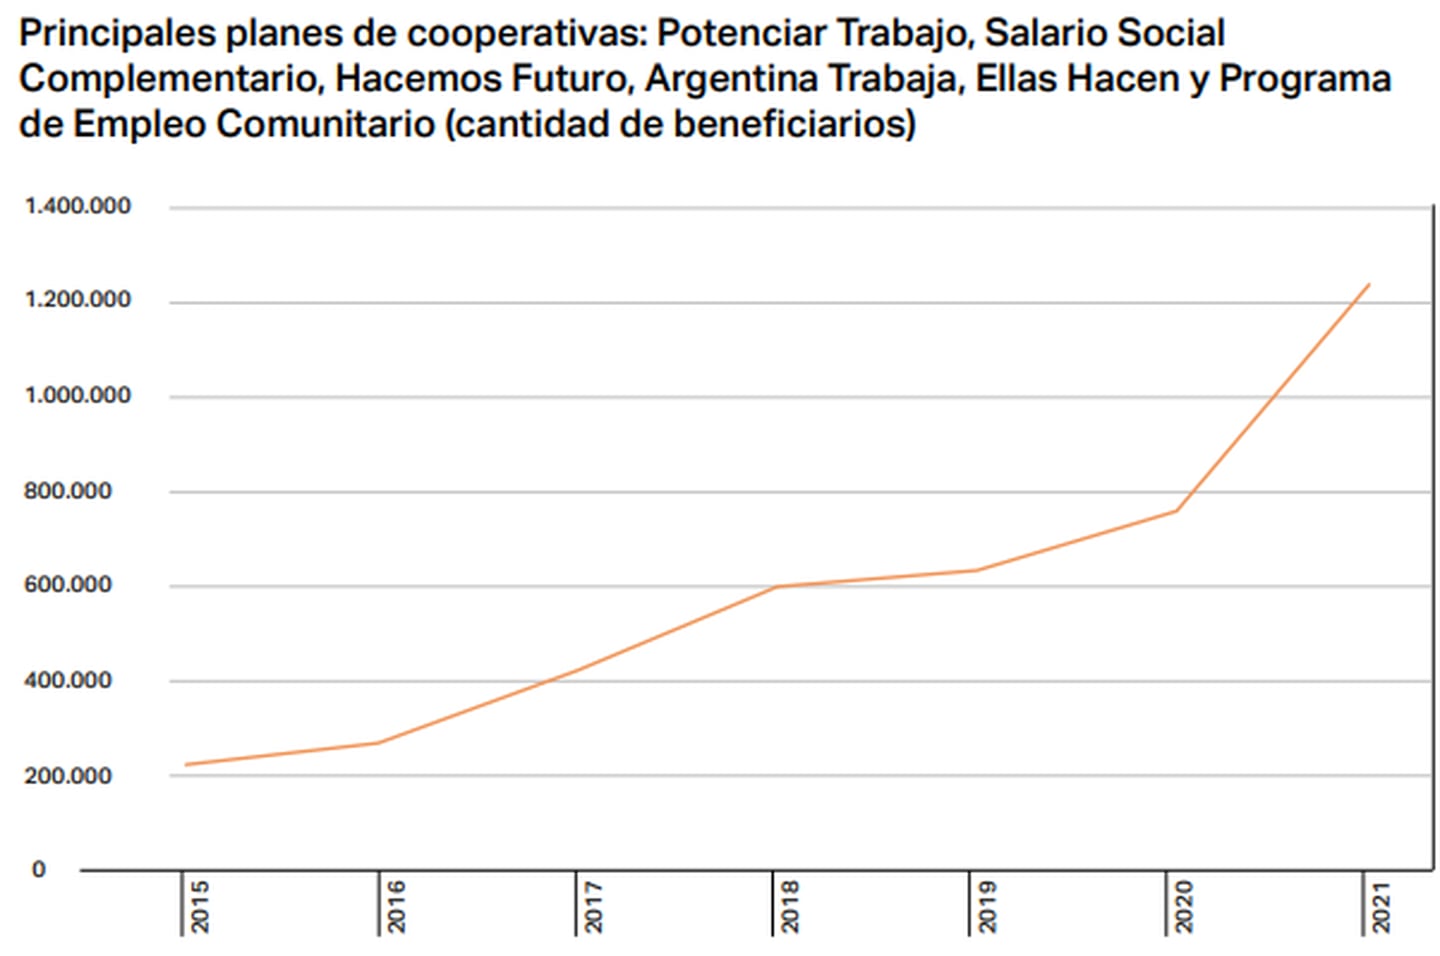 Fuente: Mapa de las Políticas Sociales en la Argentina (Zarazaga, Schipani y Forlino)dfd